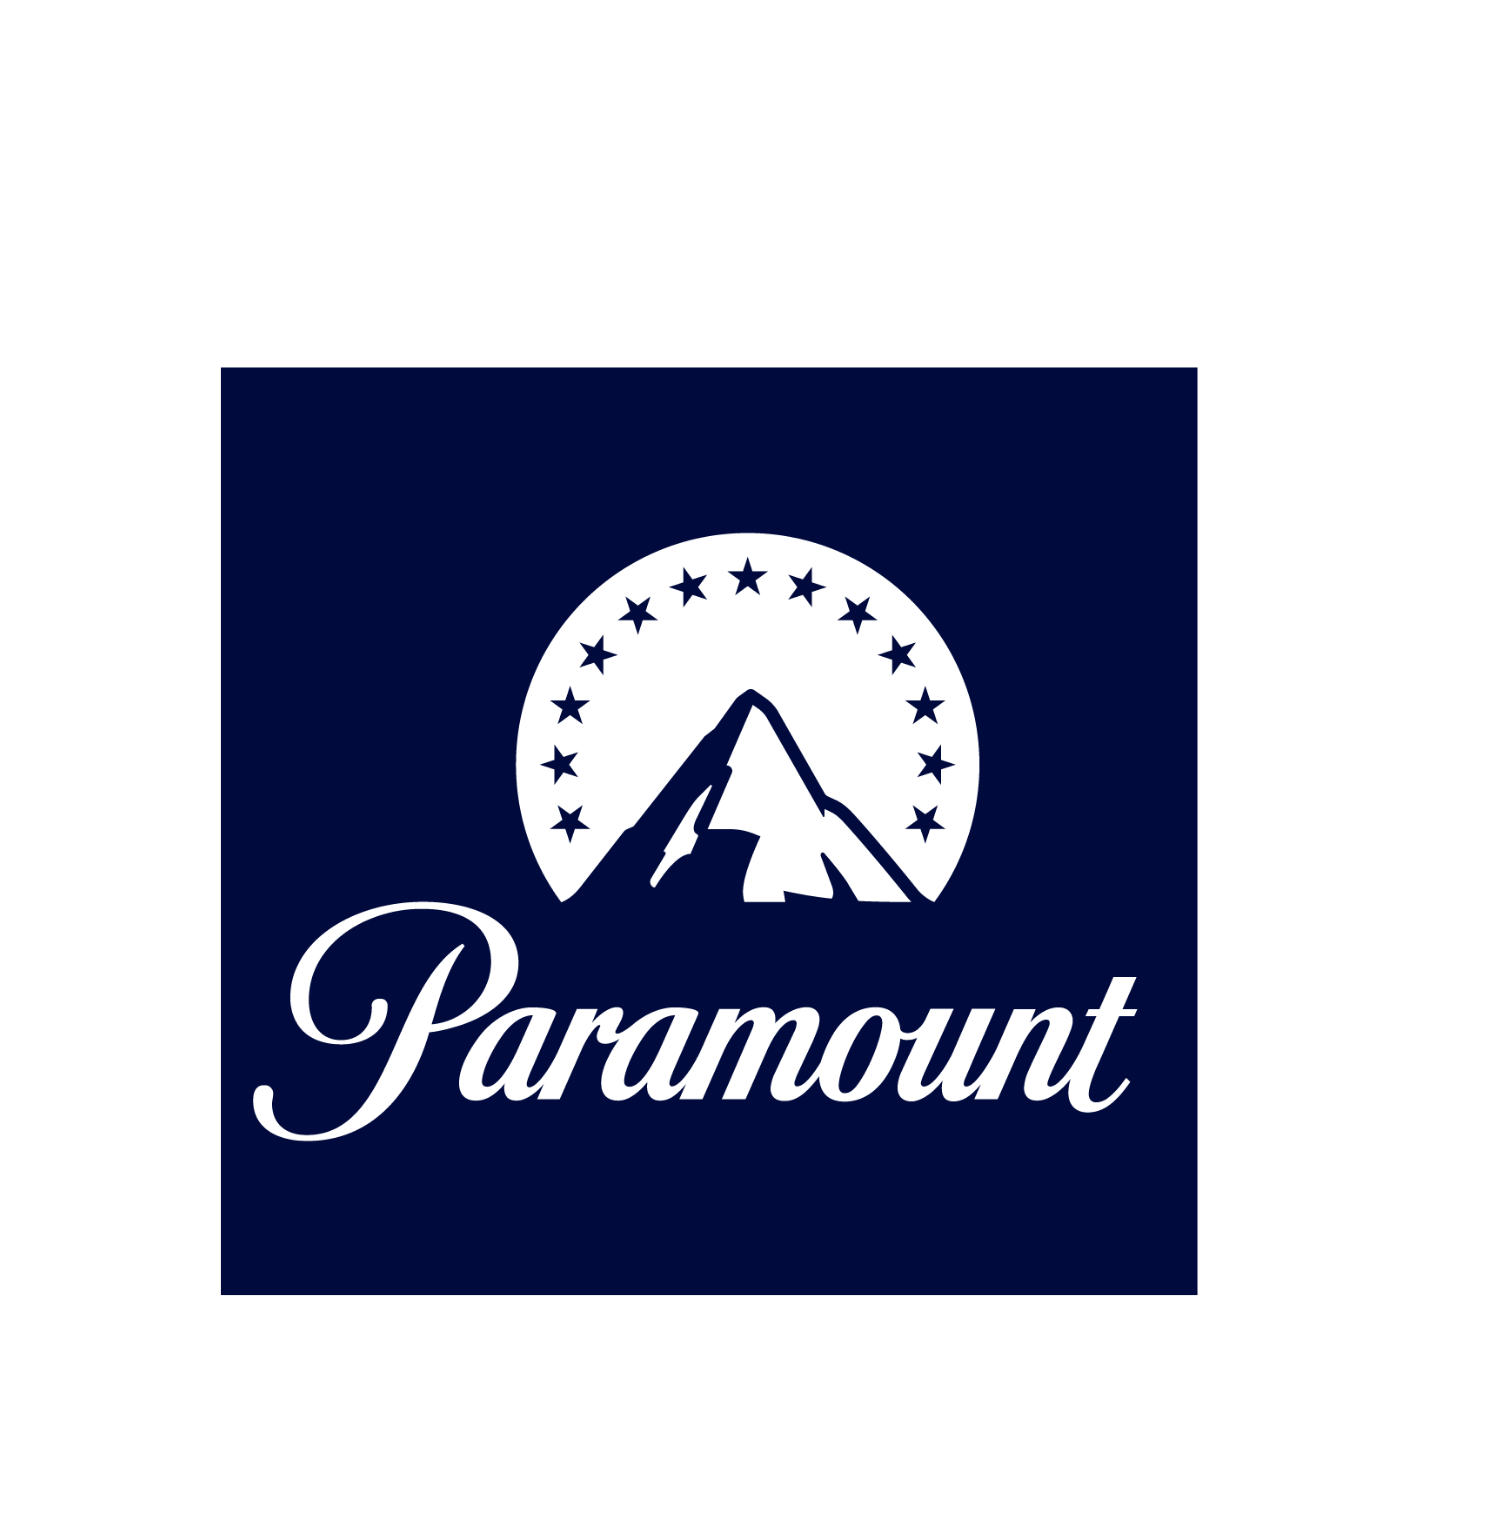 ENTERPRISE - Paramount-1